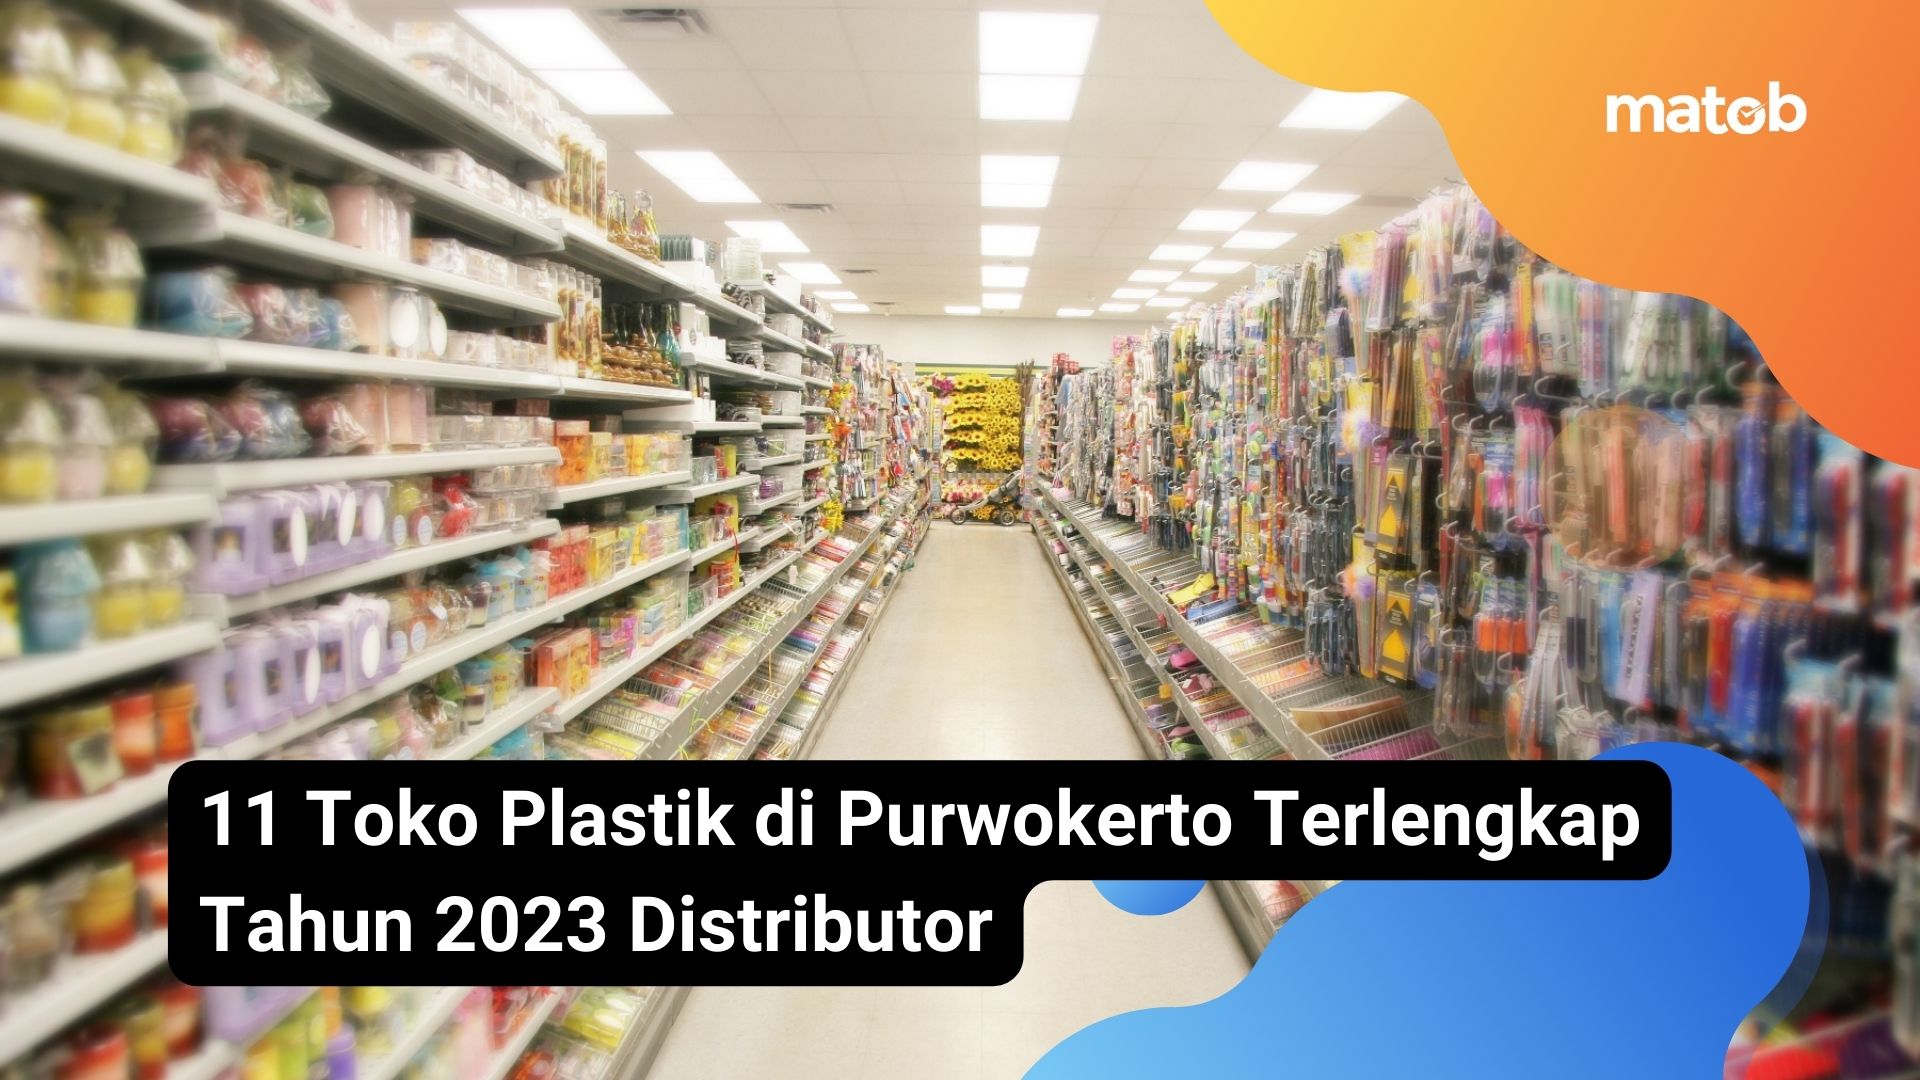 11 Toko Plastik di Purwokerto Terlengkap Tahun 2023 Distributor